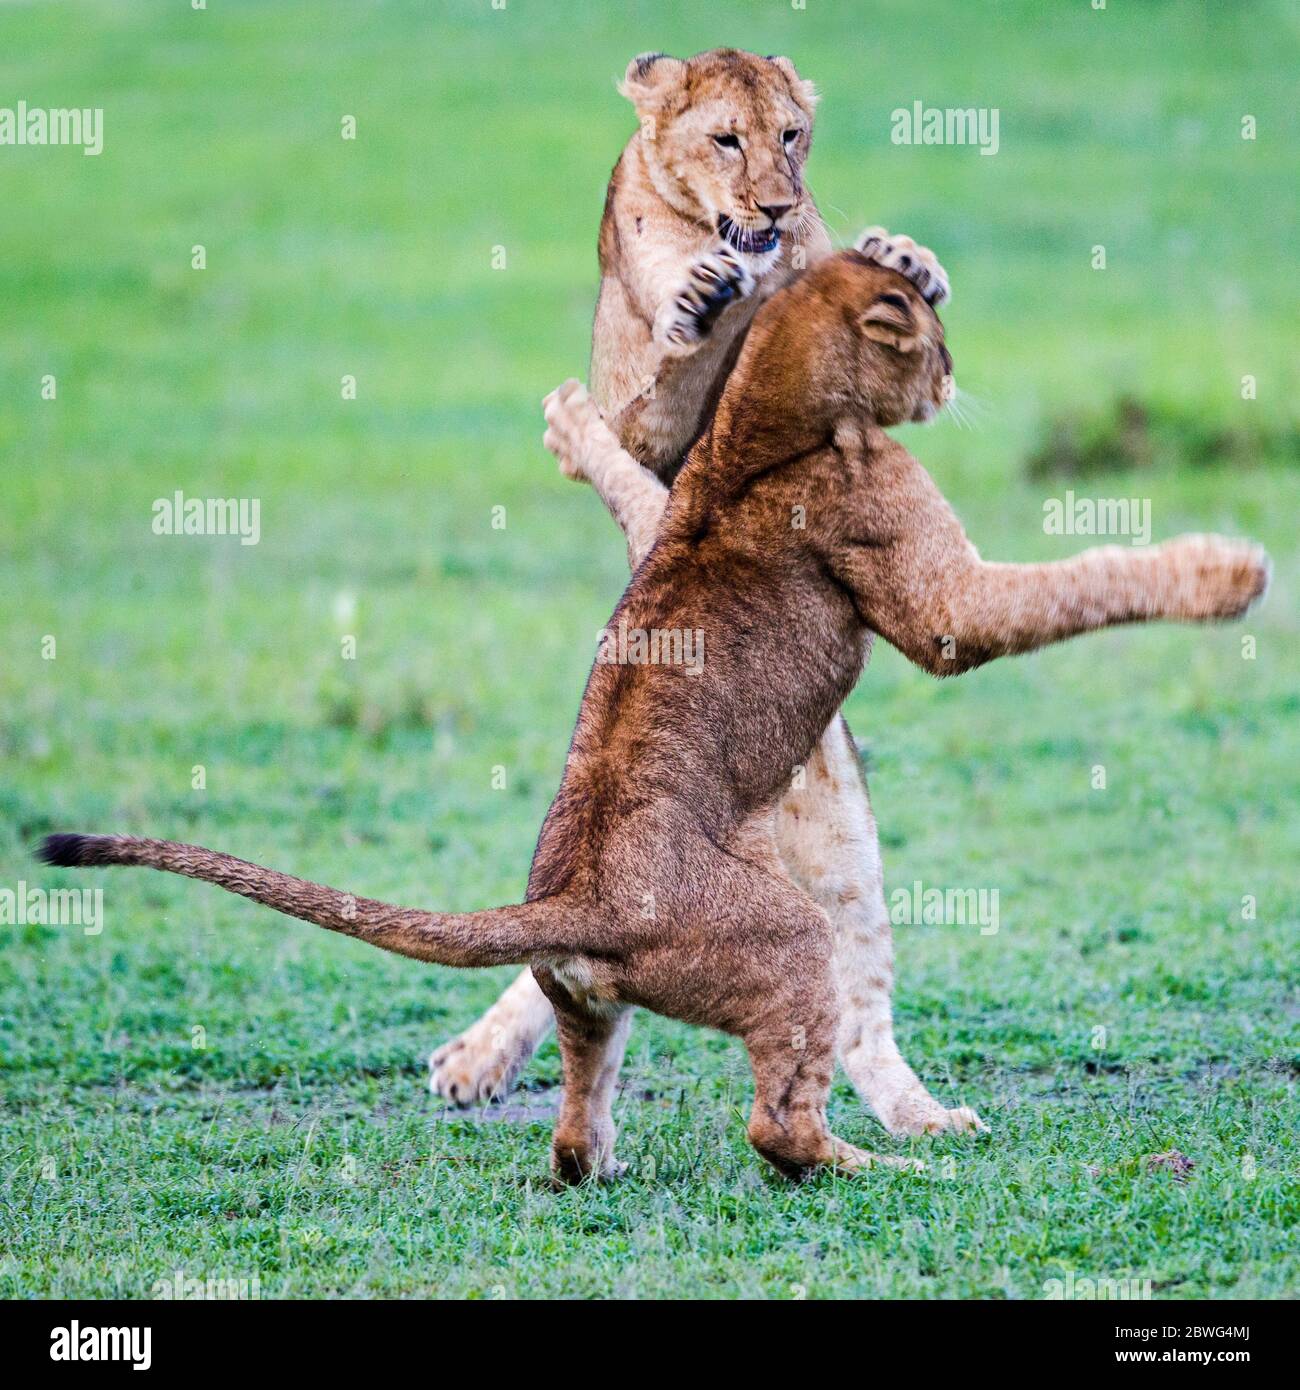 Zwei Löwinnen (Panthera leo) kämpfen, Ngorongoro Conservation Area, Tansania, Afrika Stockfoto